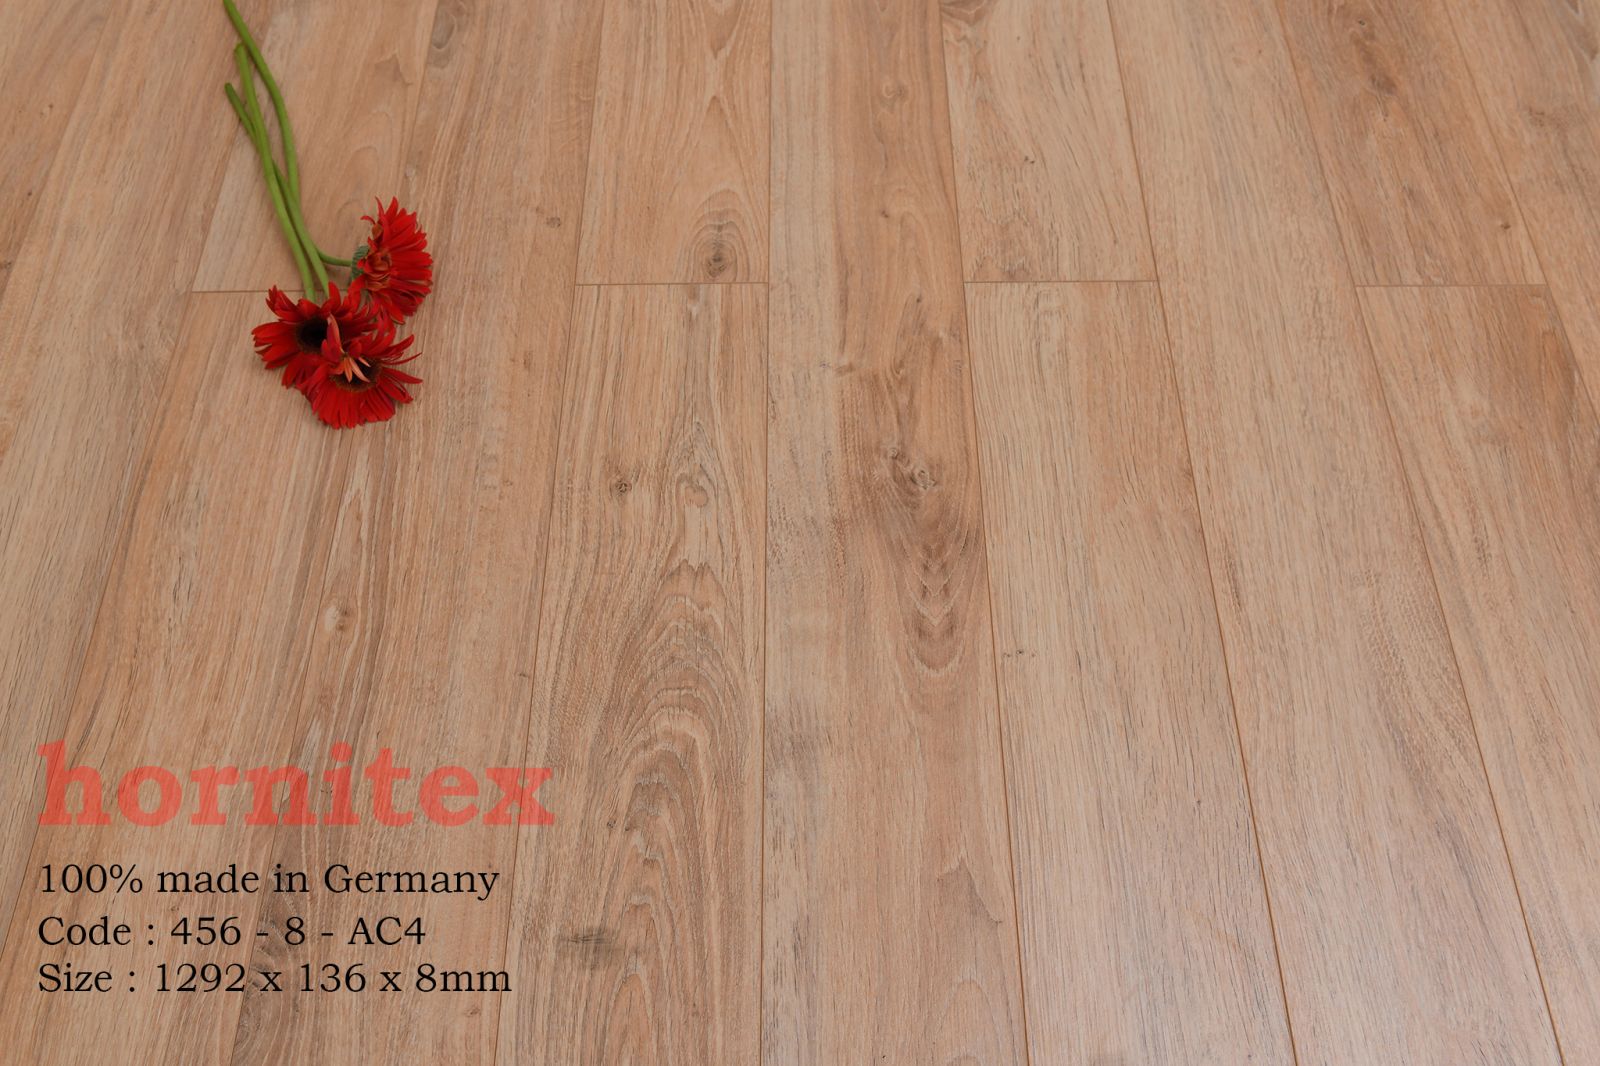 Sàn gỗ công nghiệp Hornitex 456-8- AC4 